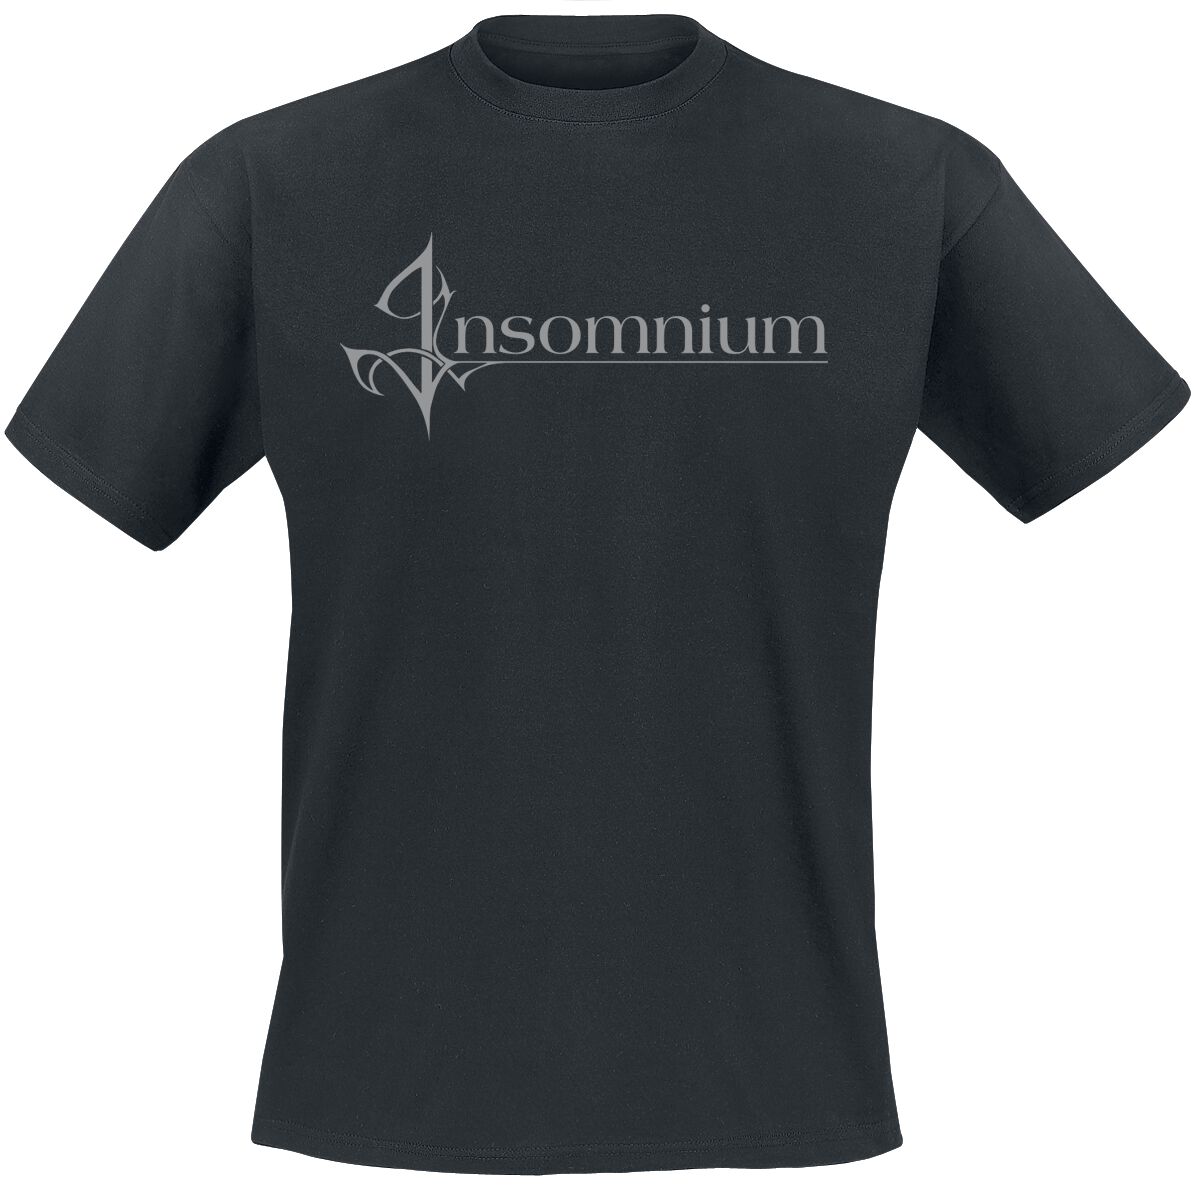 Insomnium T-Shirt - Logo - S bis L - für Männer - Größe M - schwarz  - EMP exklusives Merchandise!